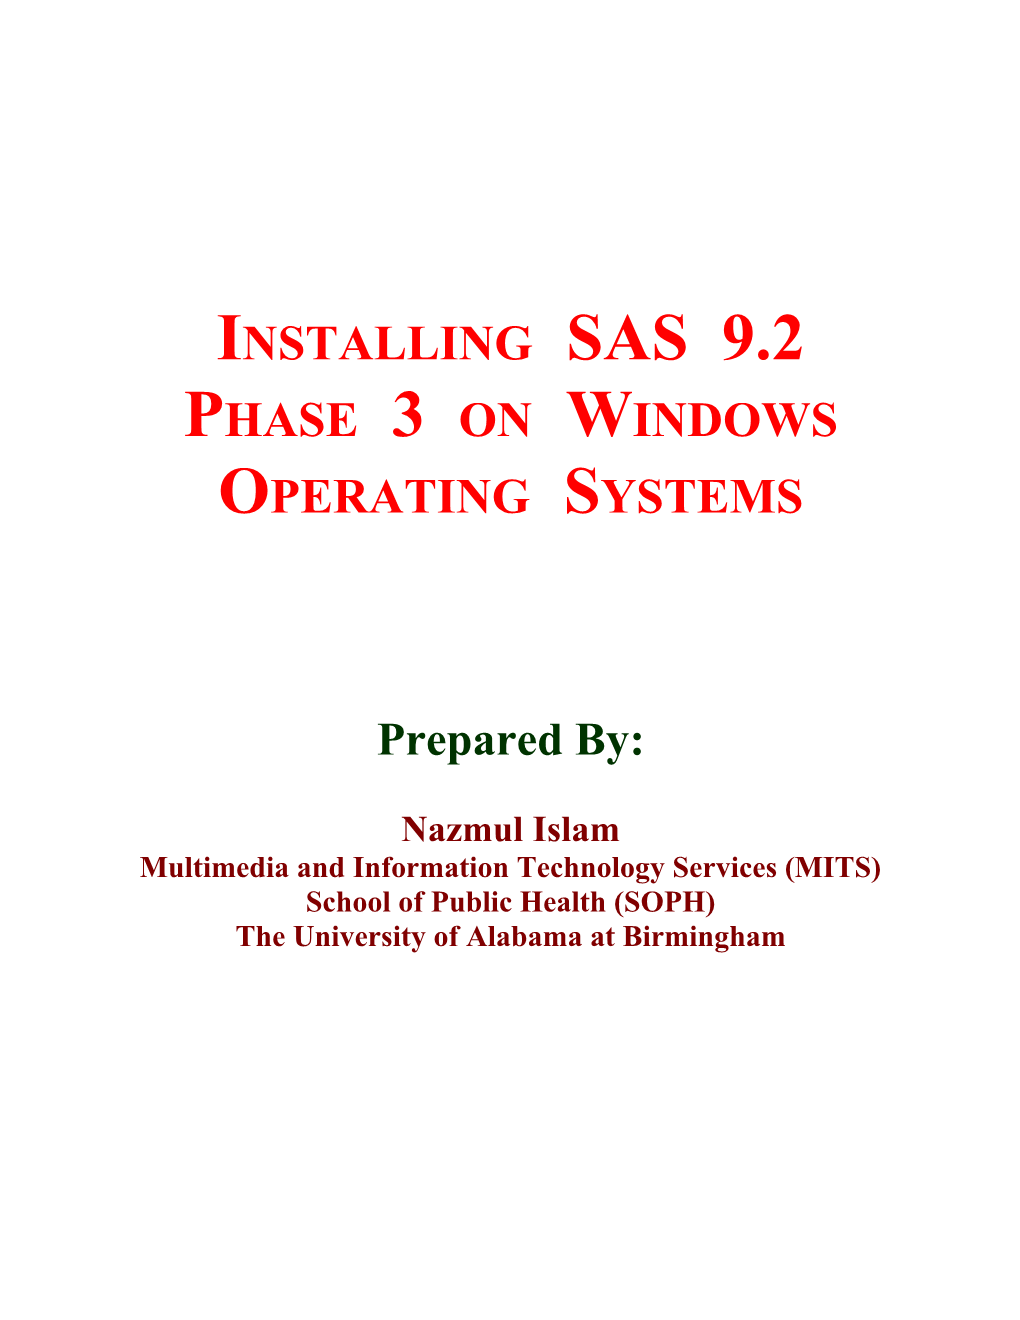 Installing SAS Version 9